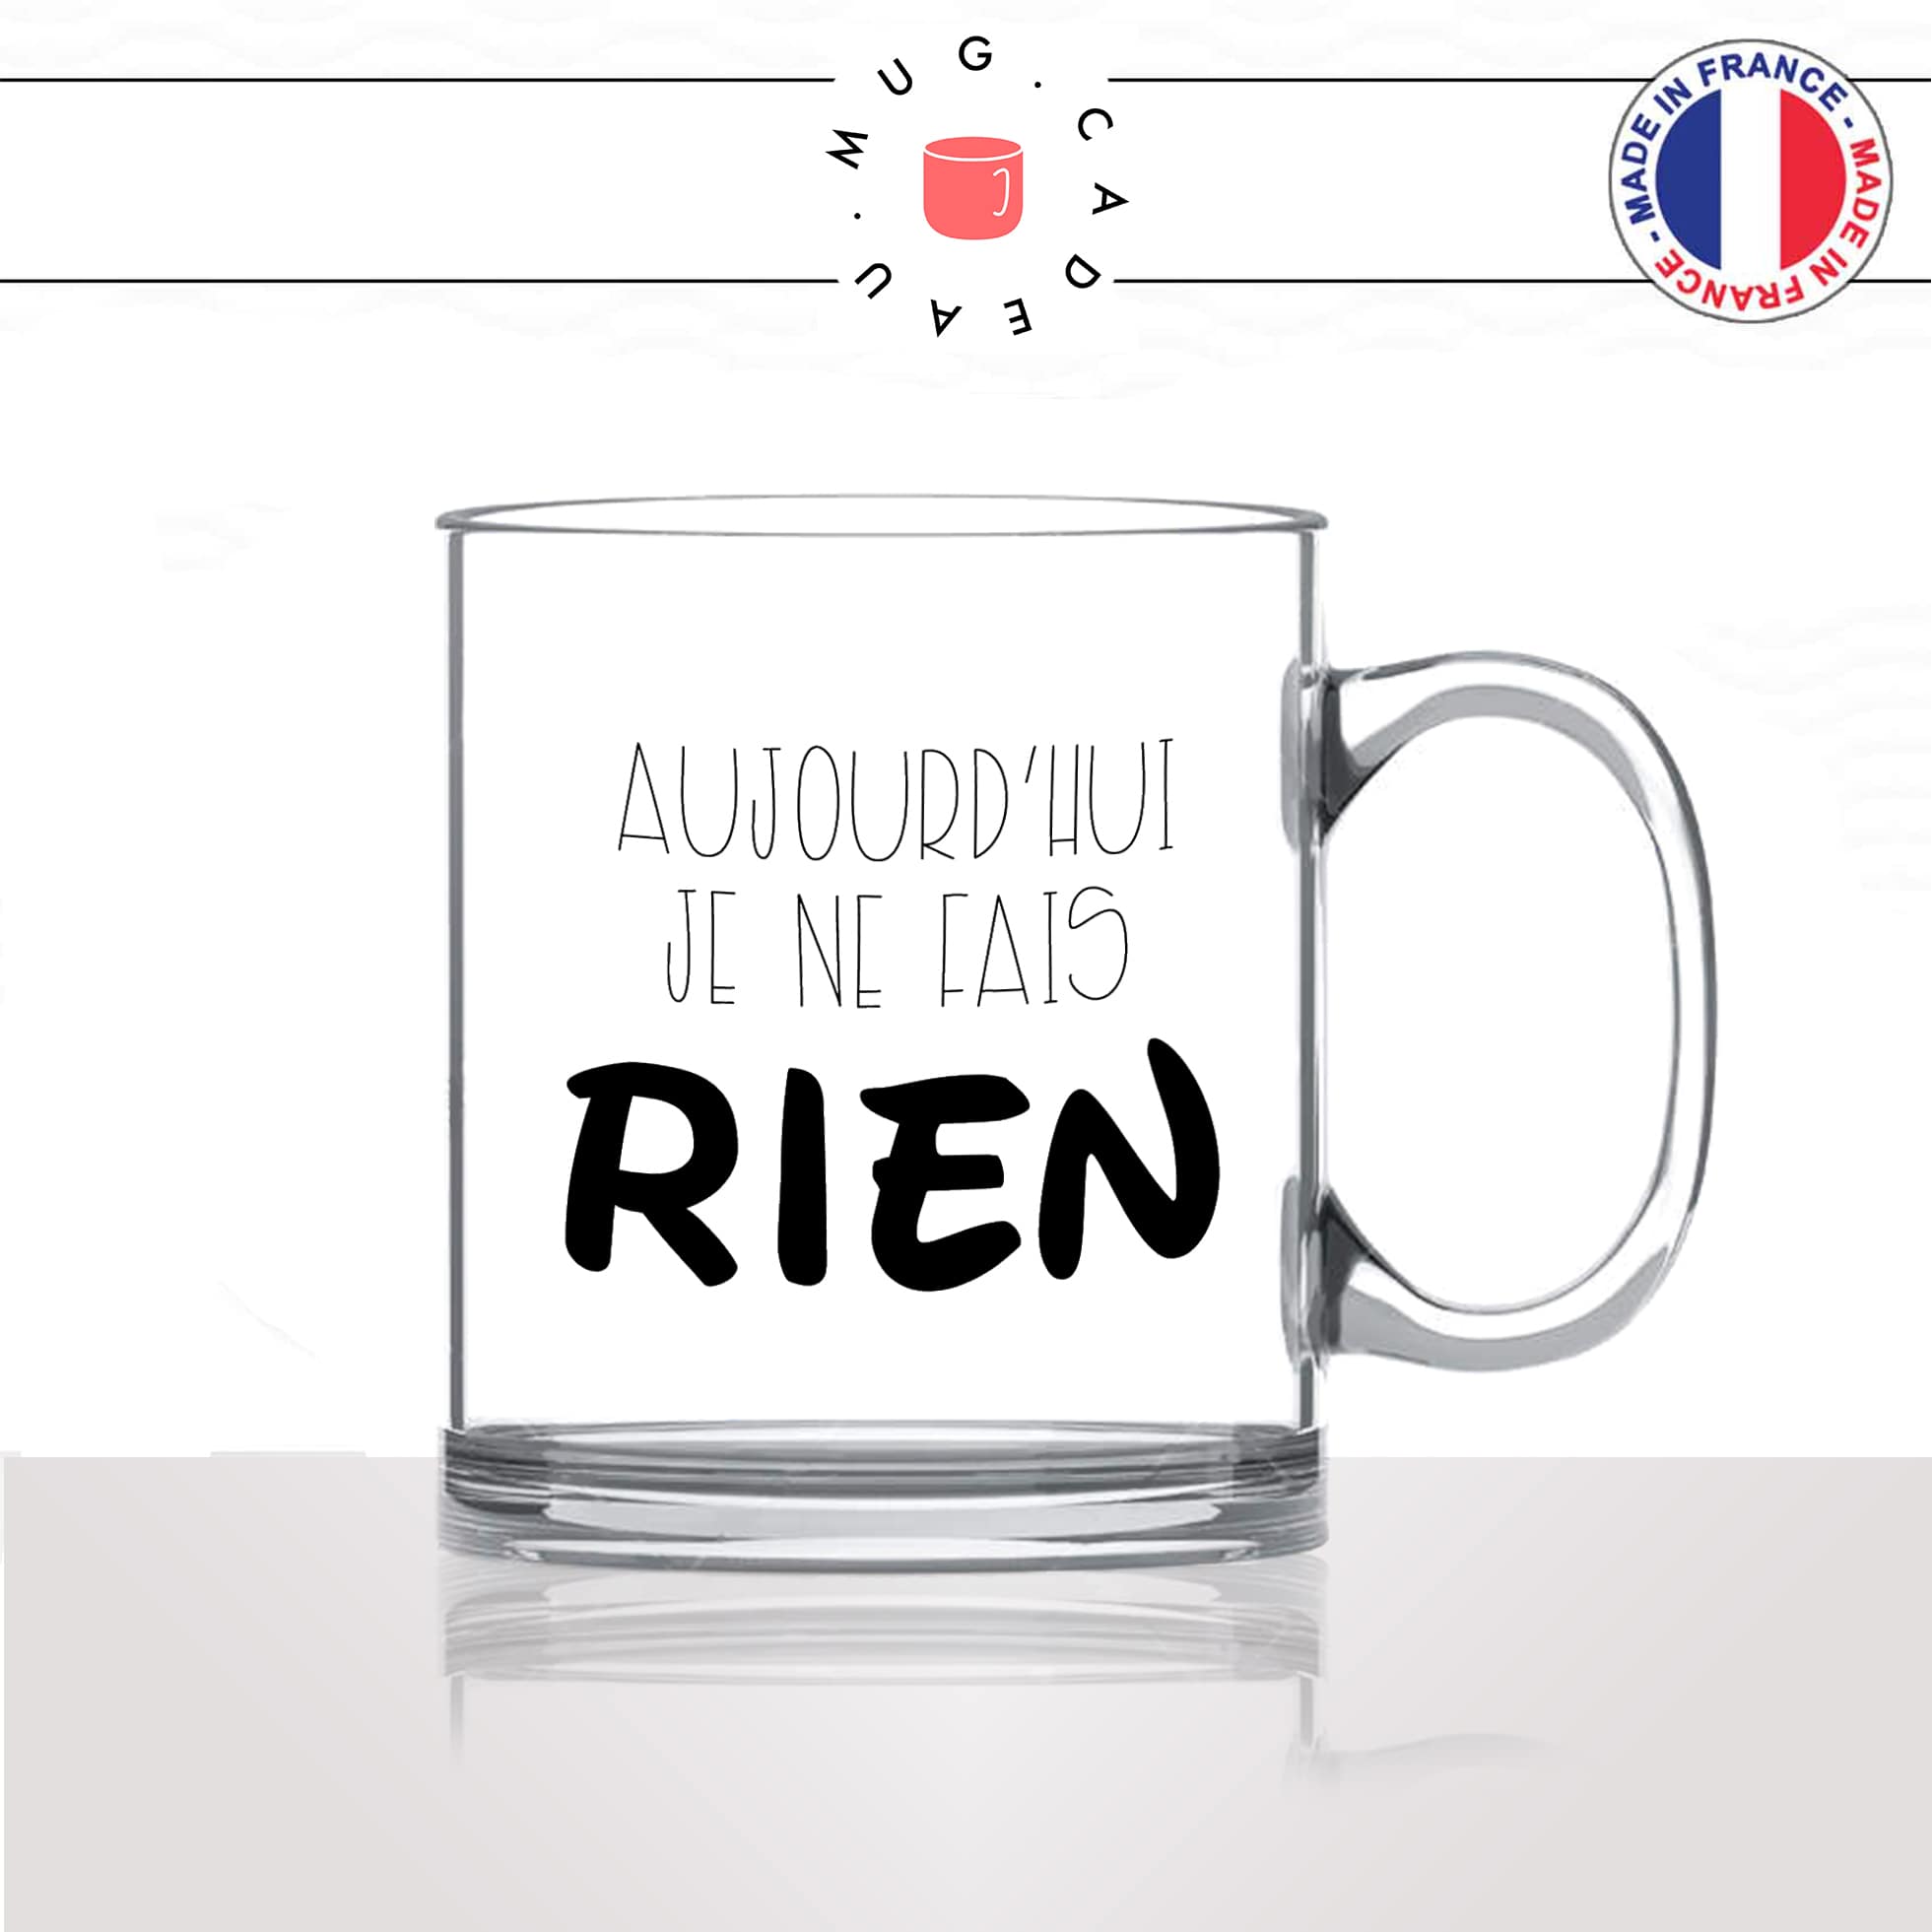 mug-tasse-en-verre-transparent-glass-aujourdhui-je-ne-fais-rien-flemme-week-end-motivation-humour-idée-cadeau-fun-cool-café-thé-original2-min